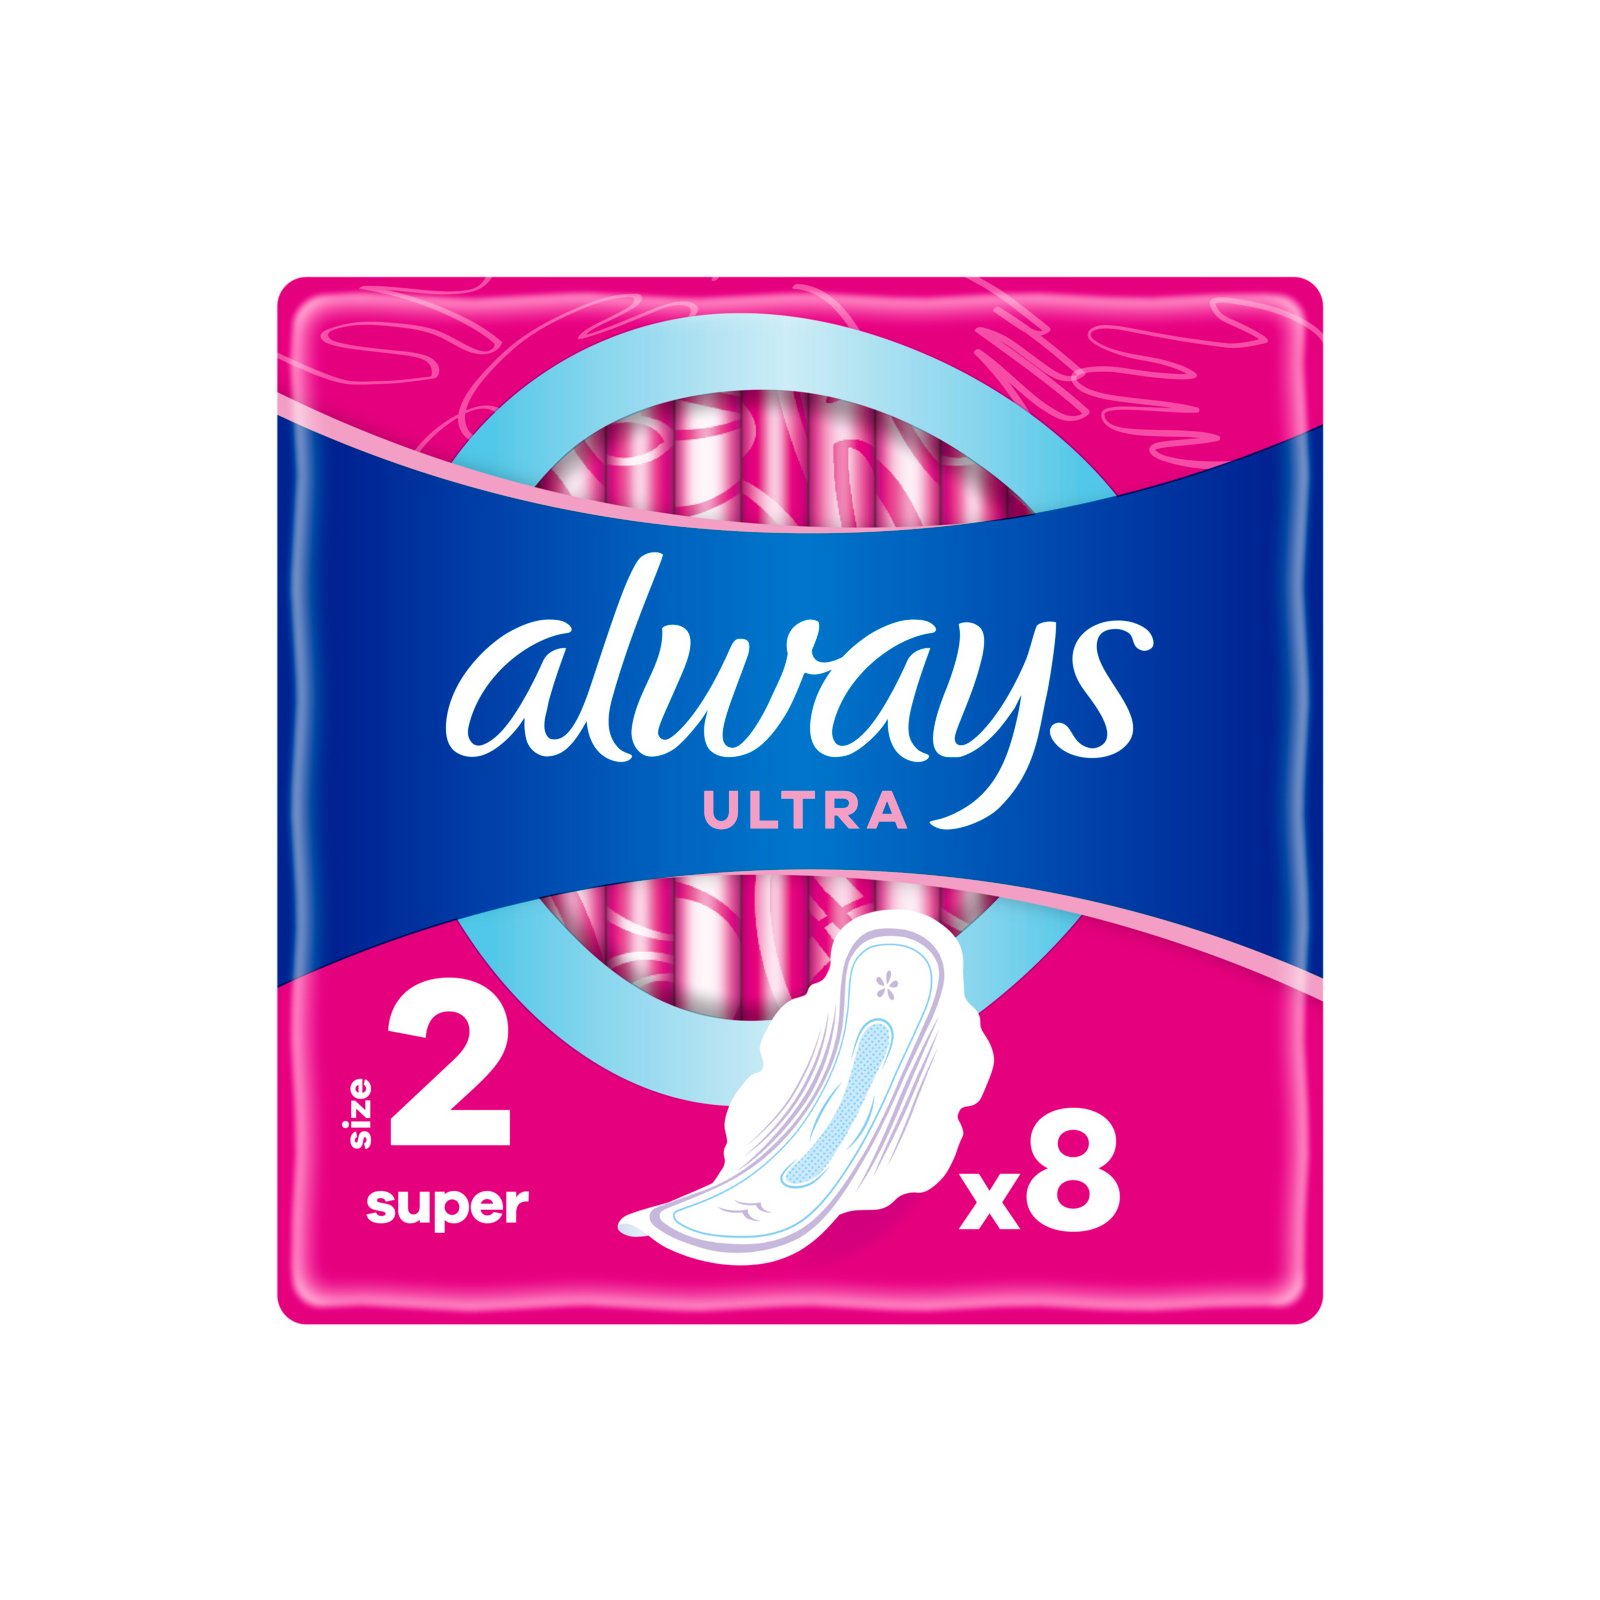 Гигиенические прокладки Always Ultra Super (Размер 2) 8 шт. (4015400403845)